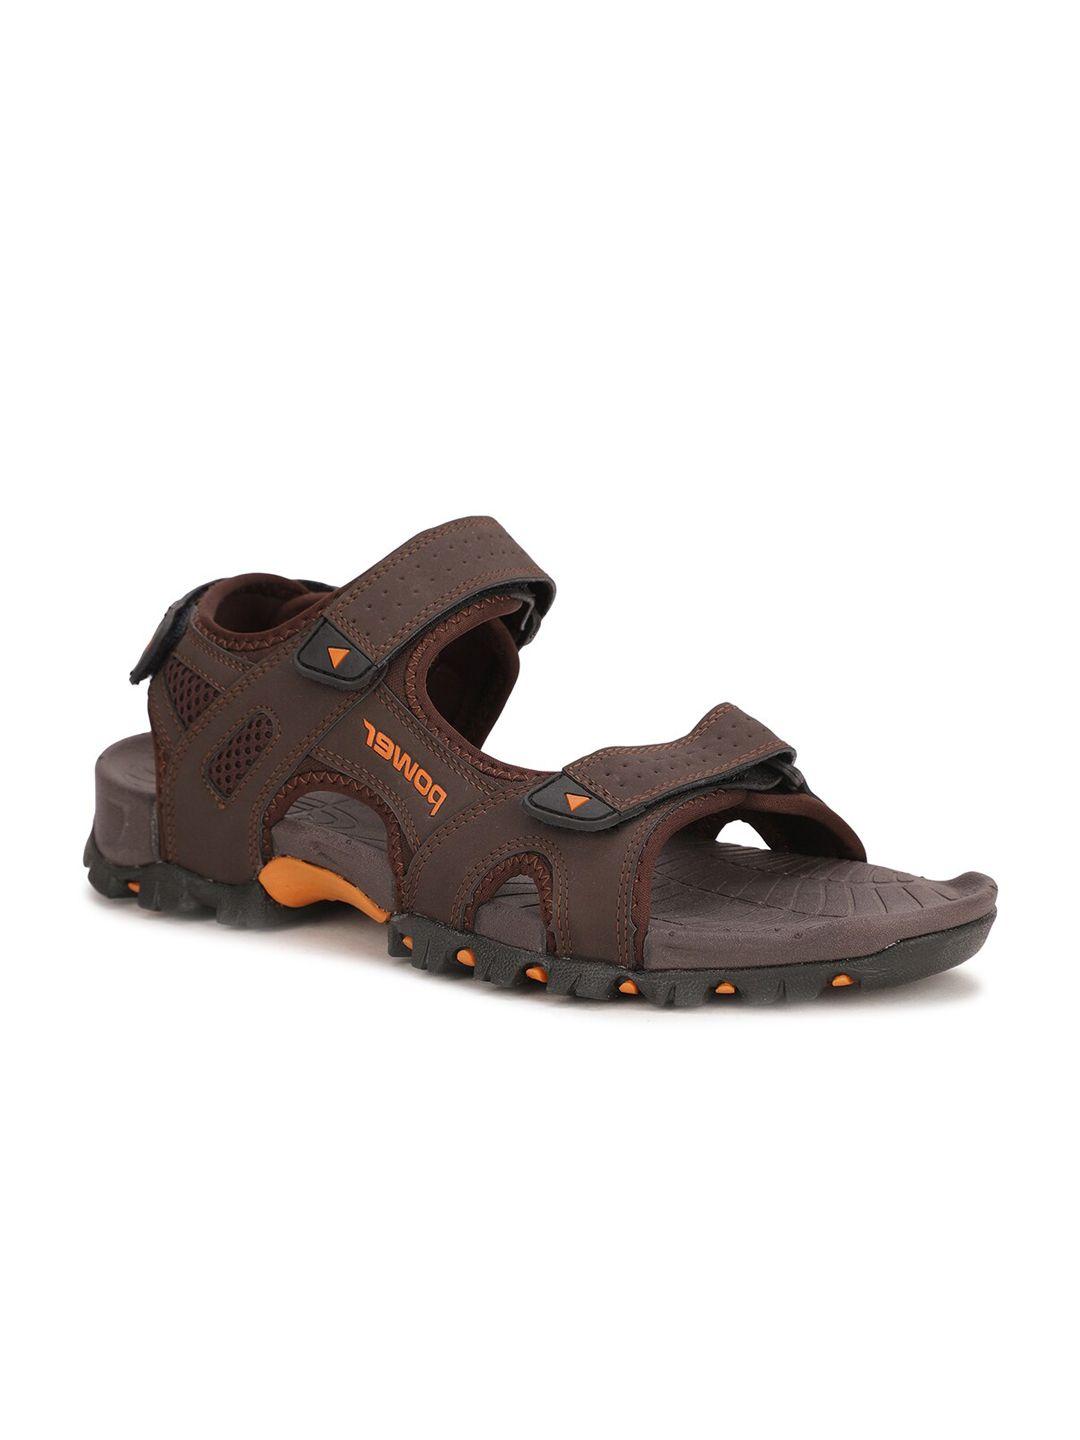 power men brown & orange solid sports sandals